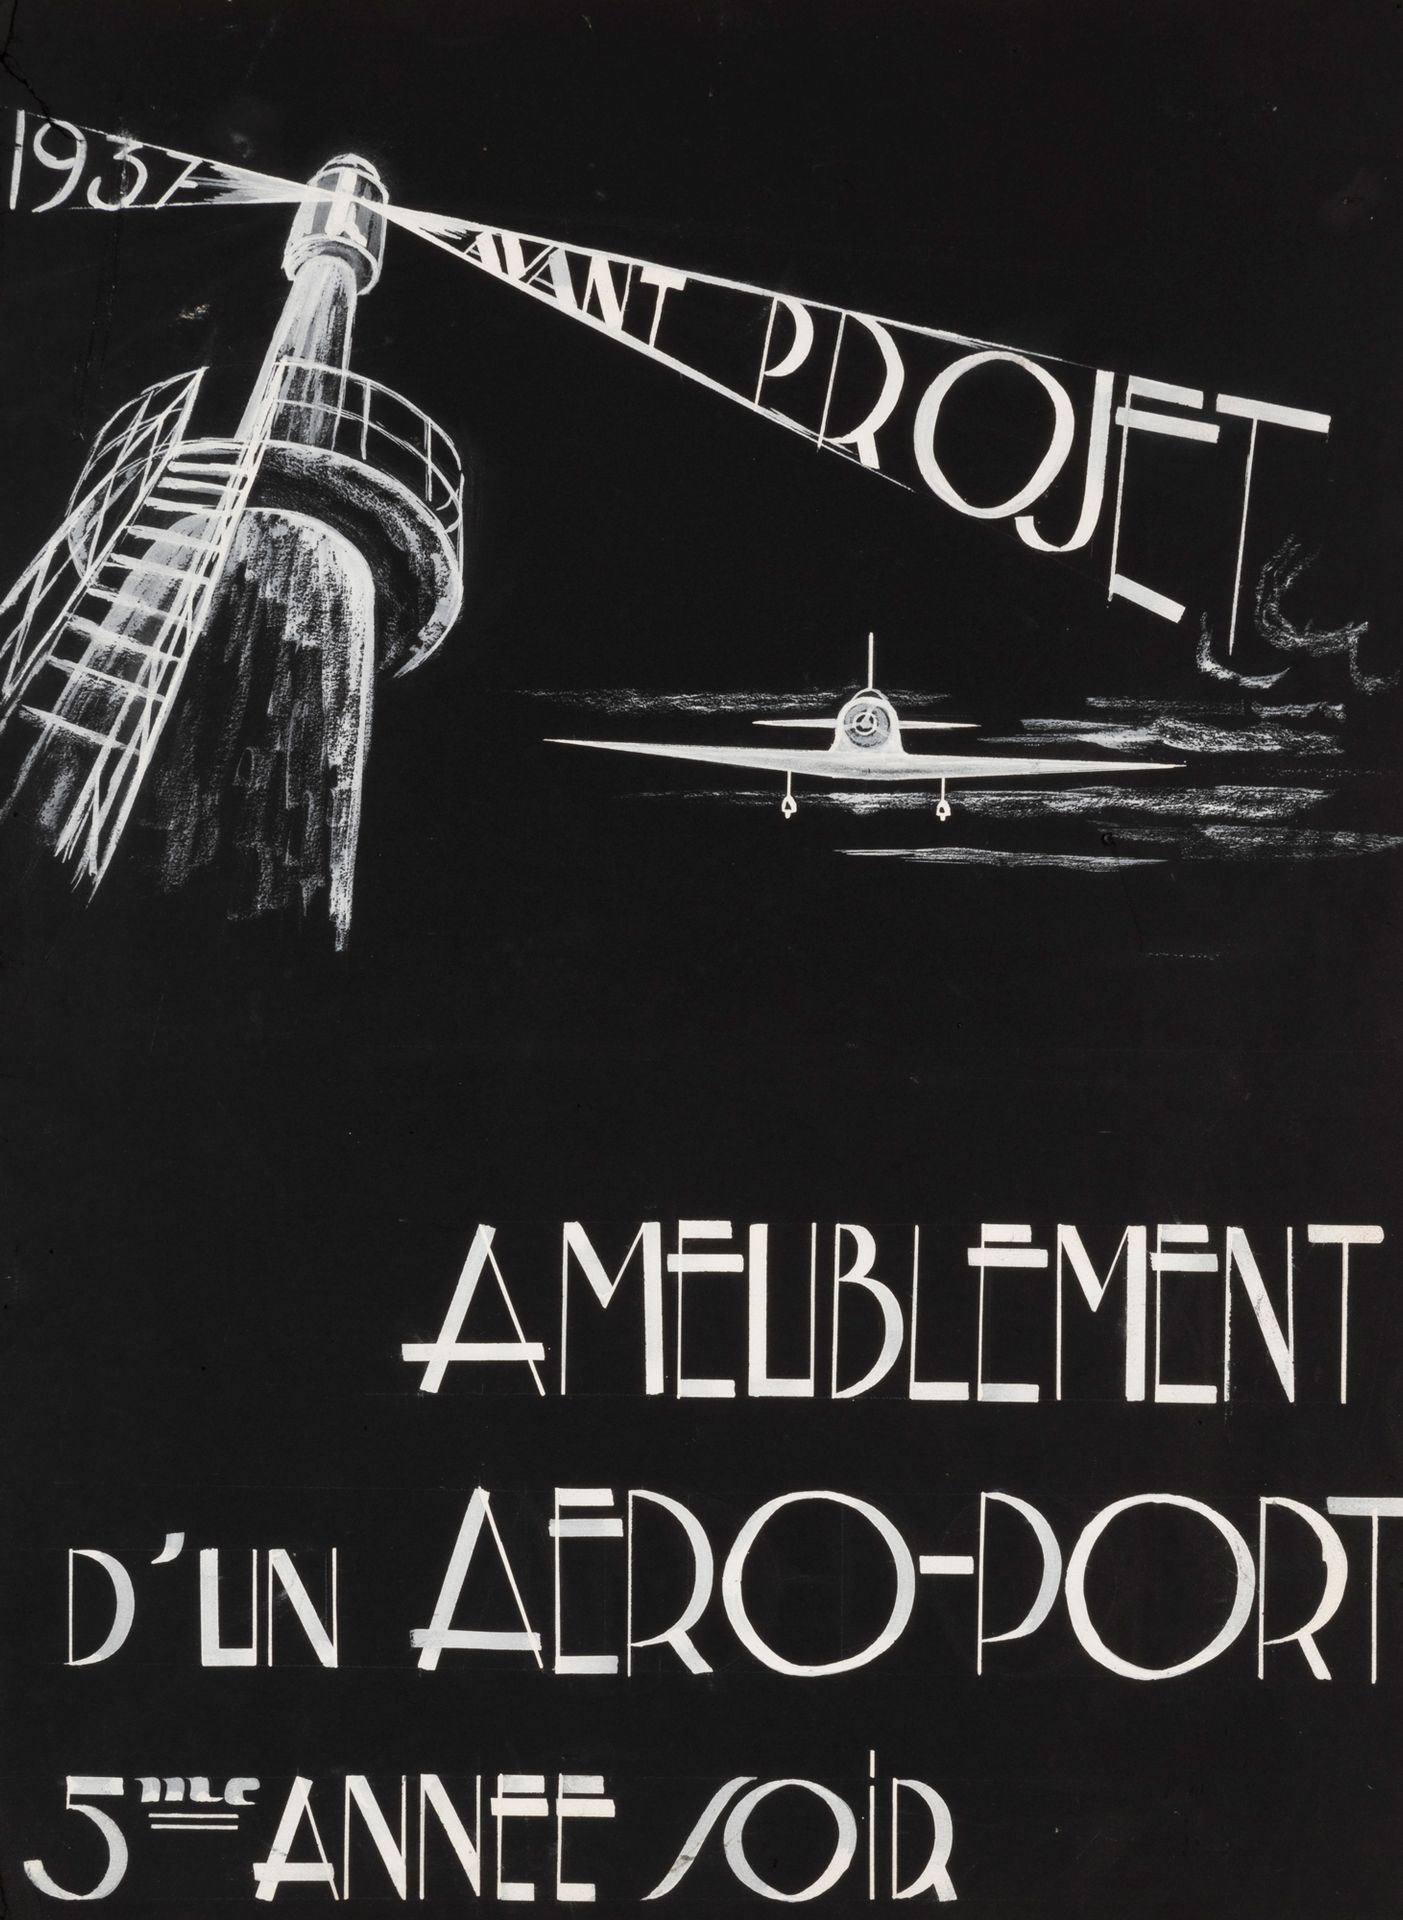 TRAVAIL D'ELEVE EN ARCHITECTURE Anteproyecto de mobiliario aeroportuario, 1937.
&hellip;